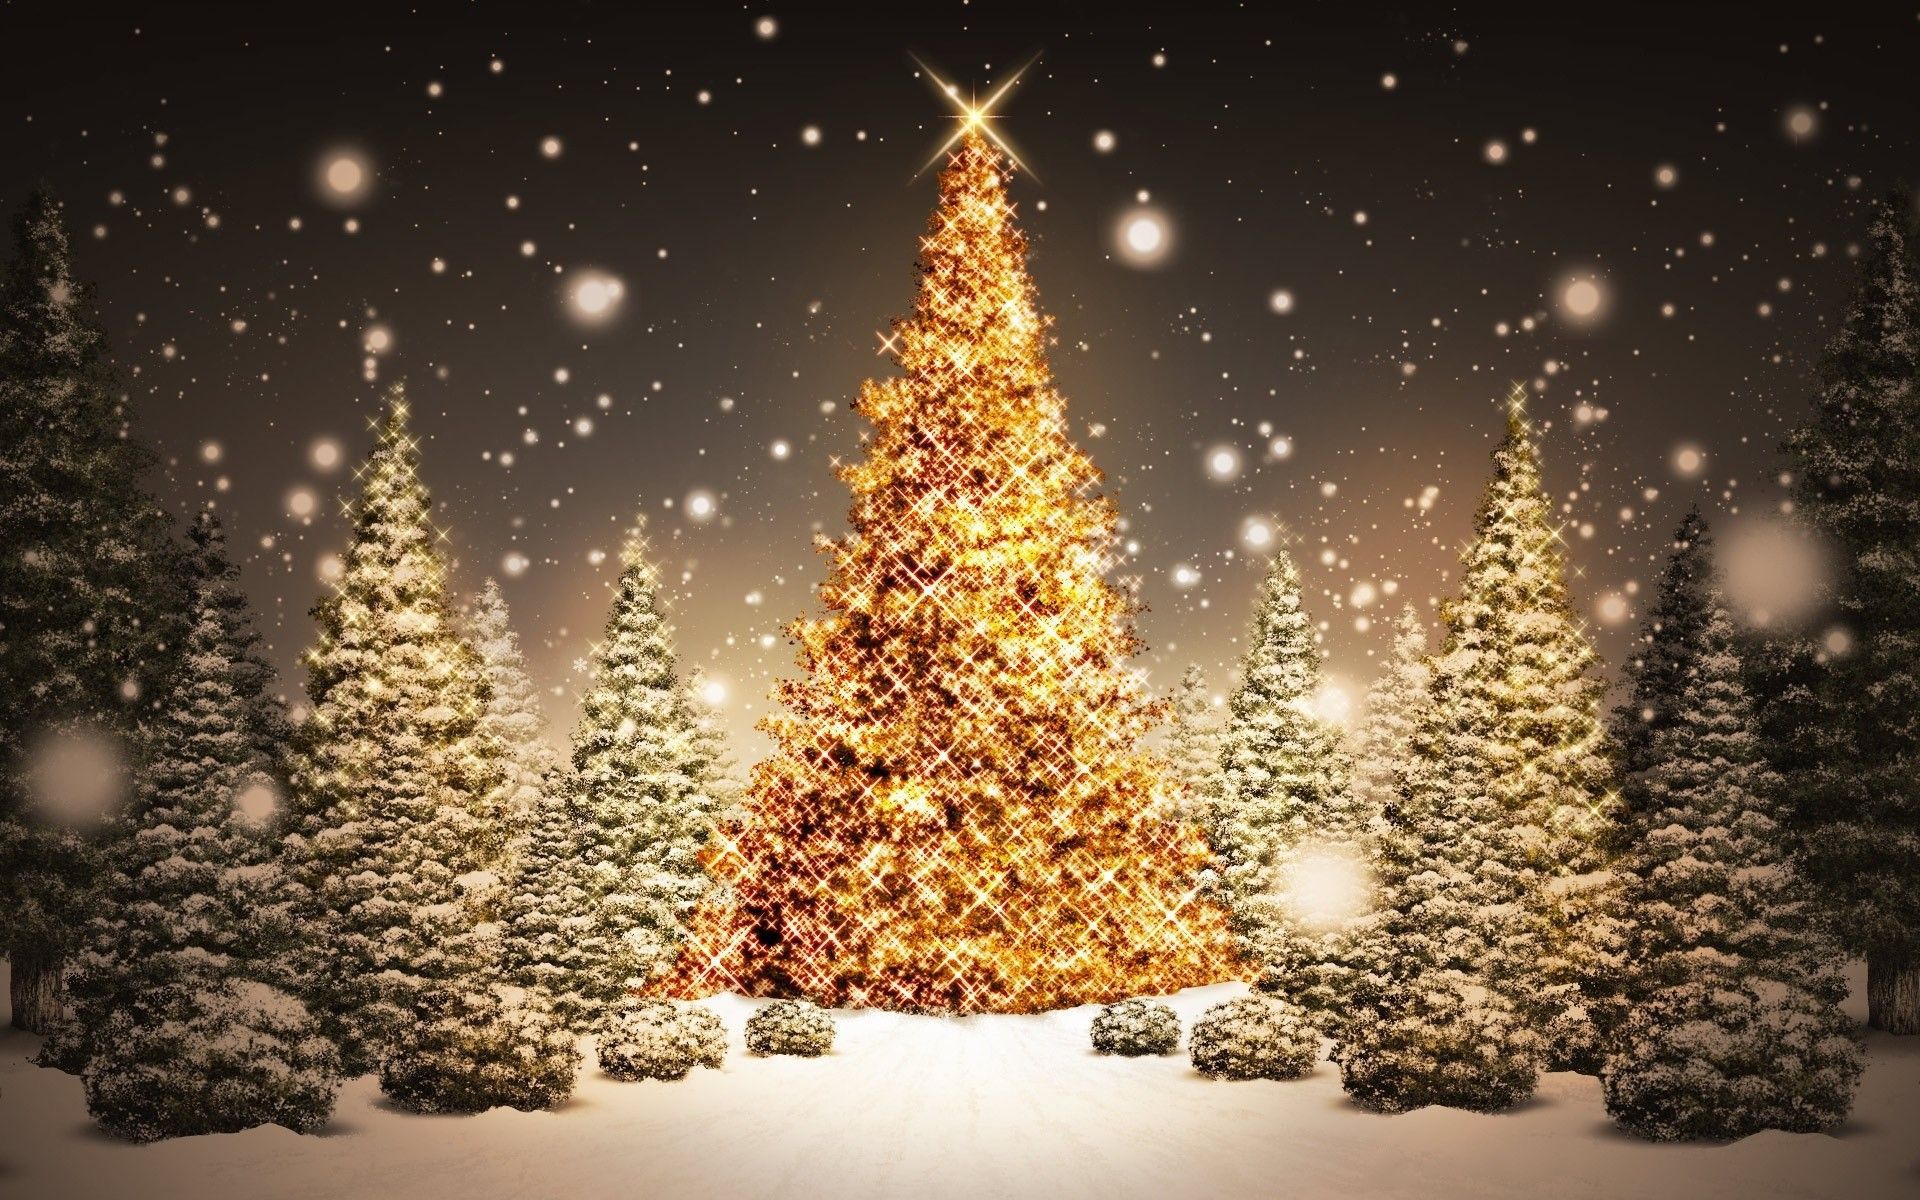 Christmas Snow Wallpaper Mobile Christmas Image With Trees